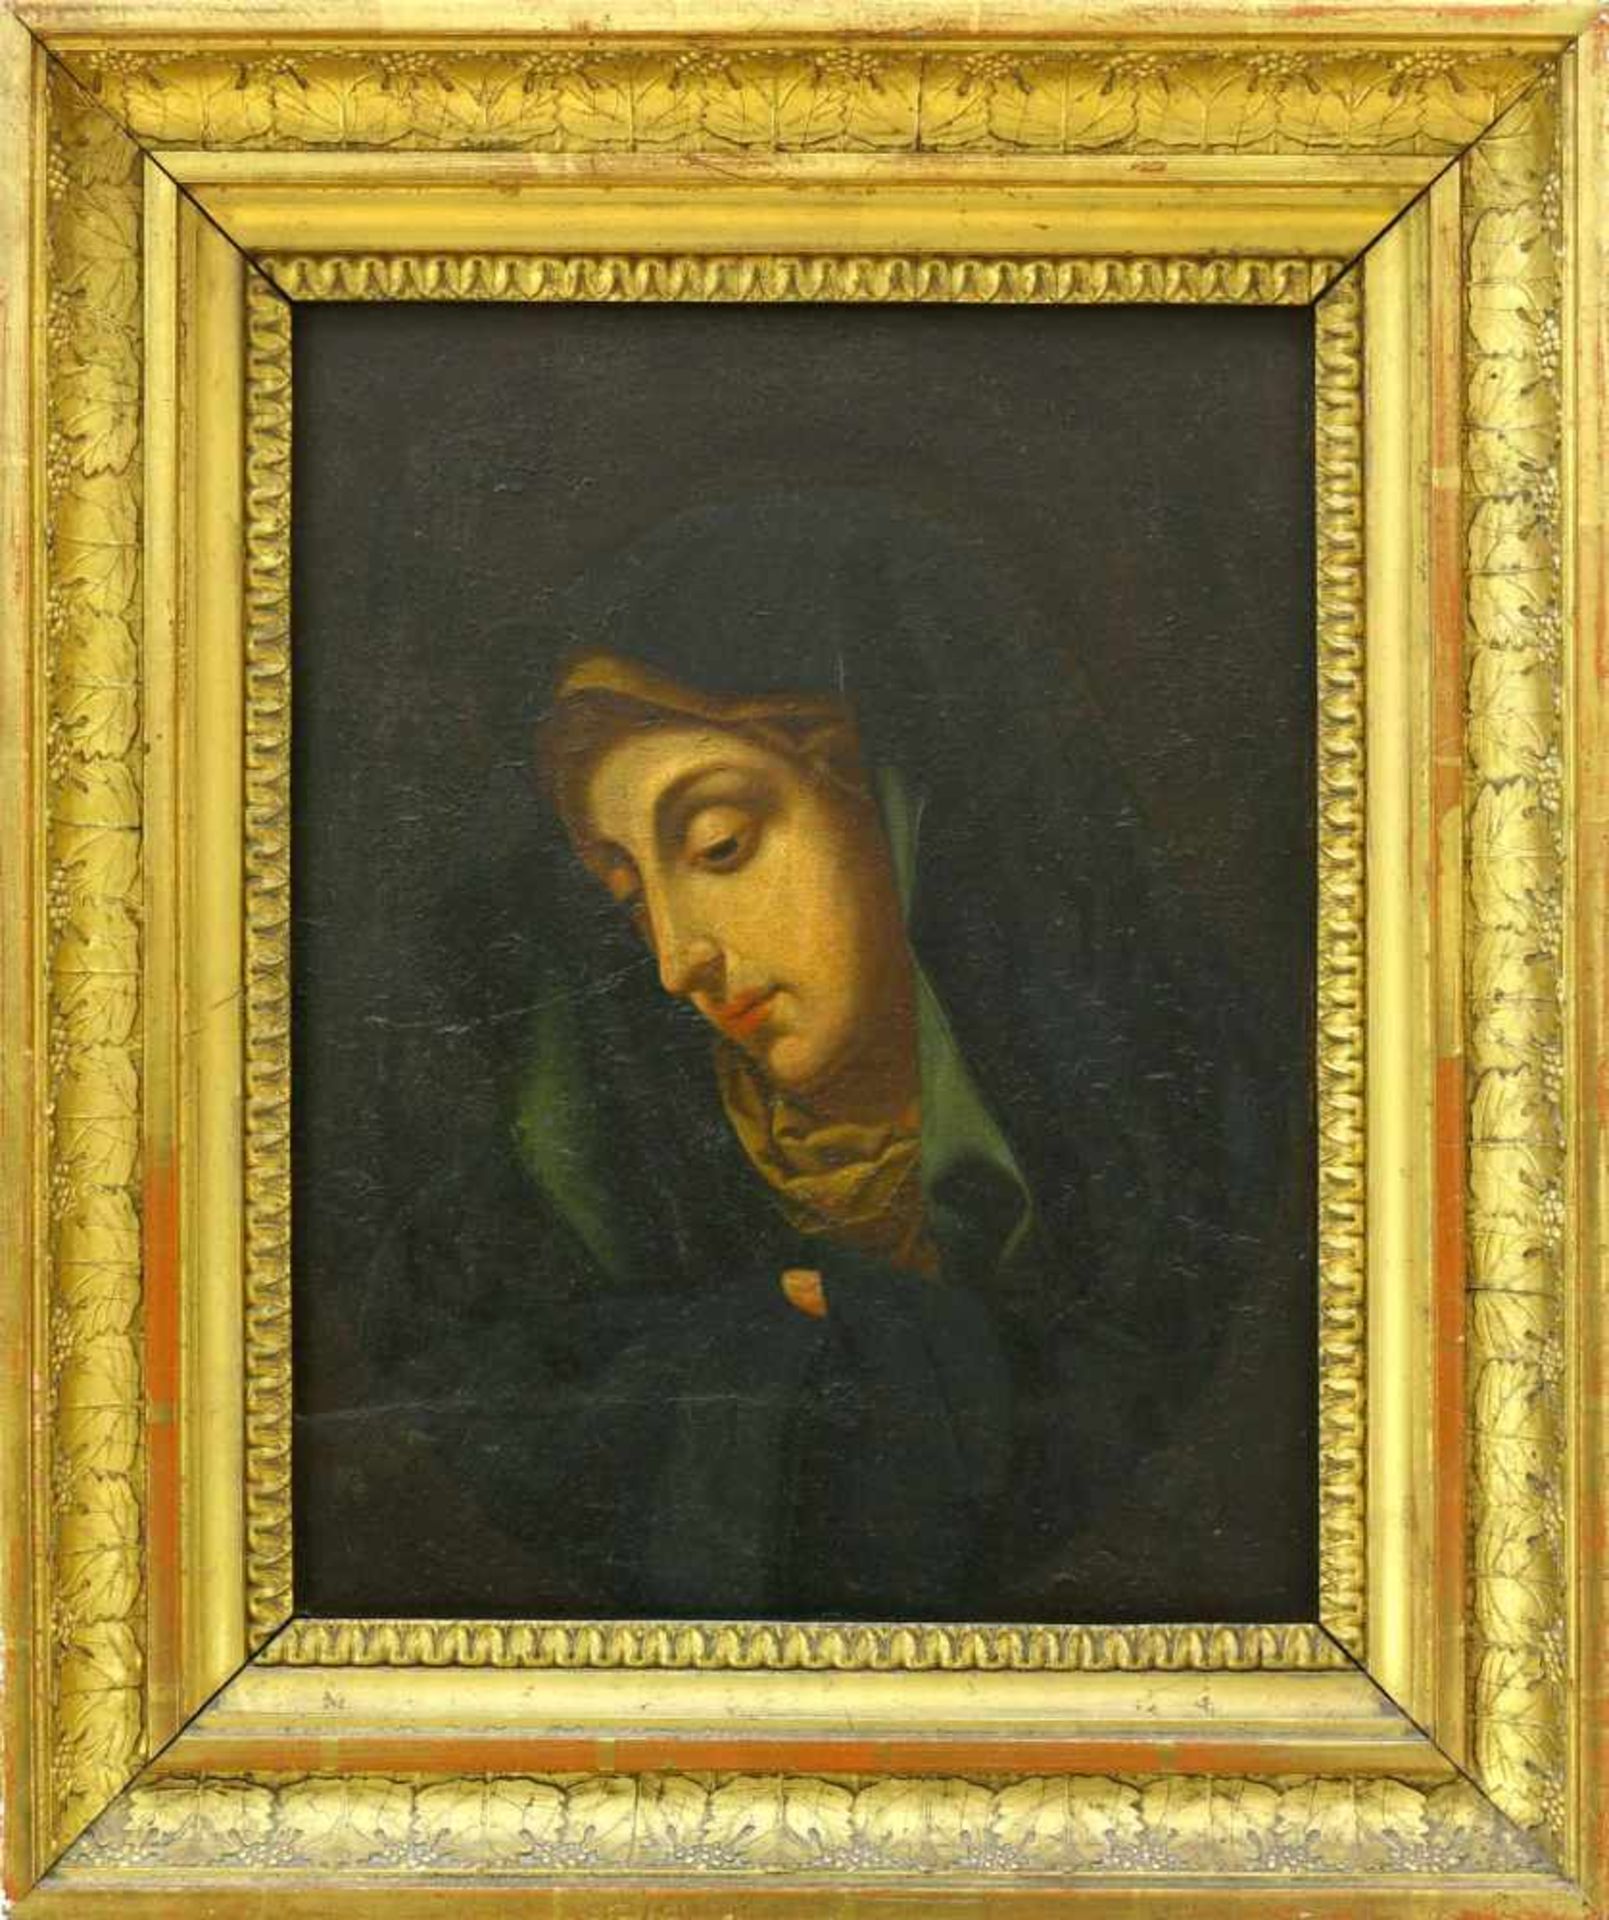 Maler, 18. Jh., wohl SpanienMadonna, den Blick nach unten gerichtet. Öl auf Holz. 27,2 x 21,2 cm.